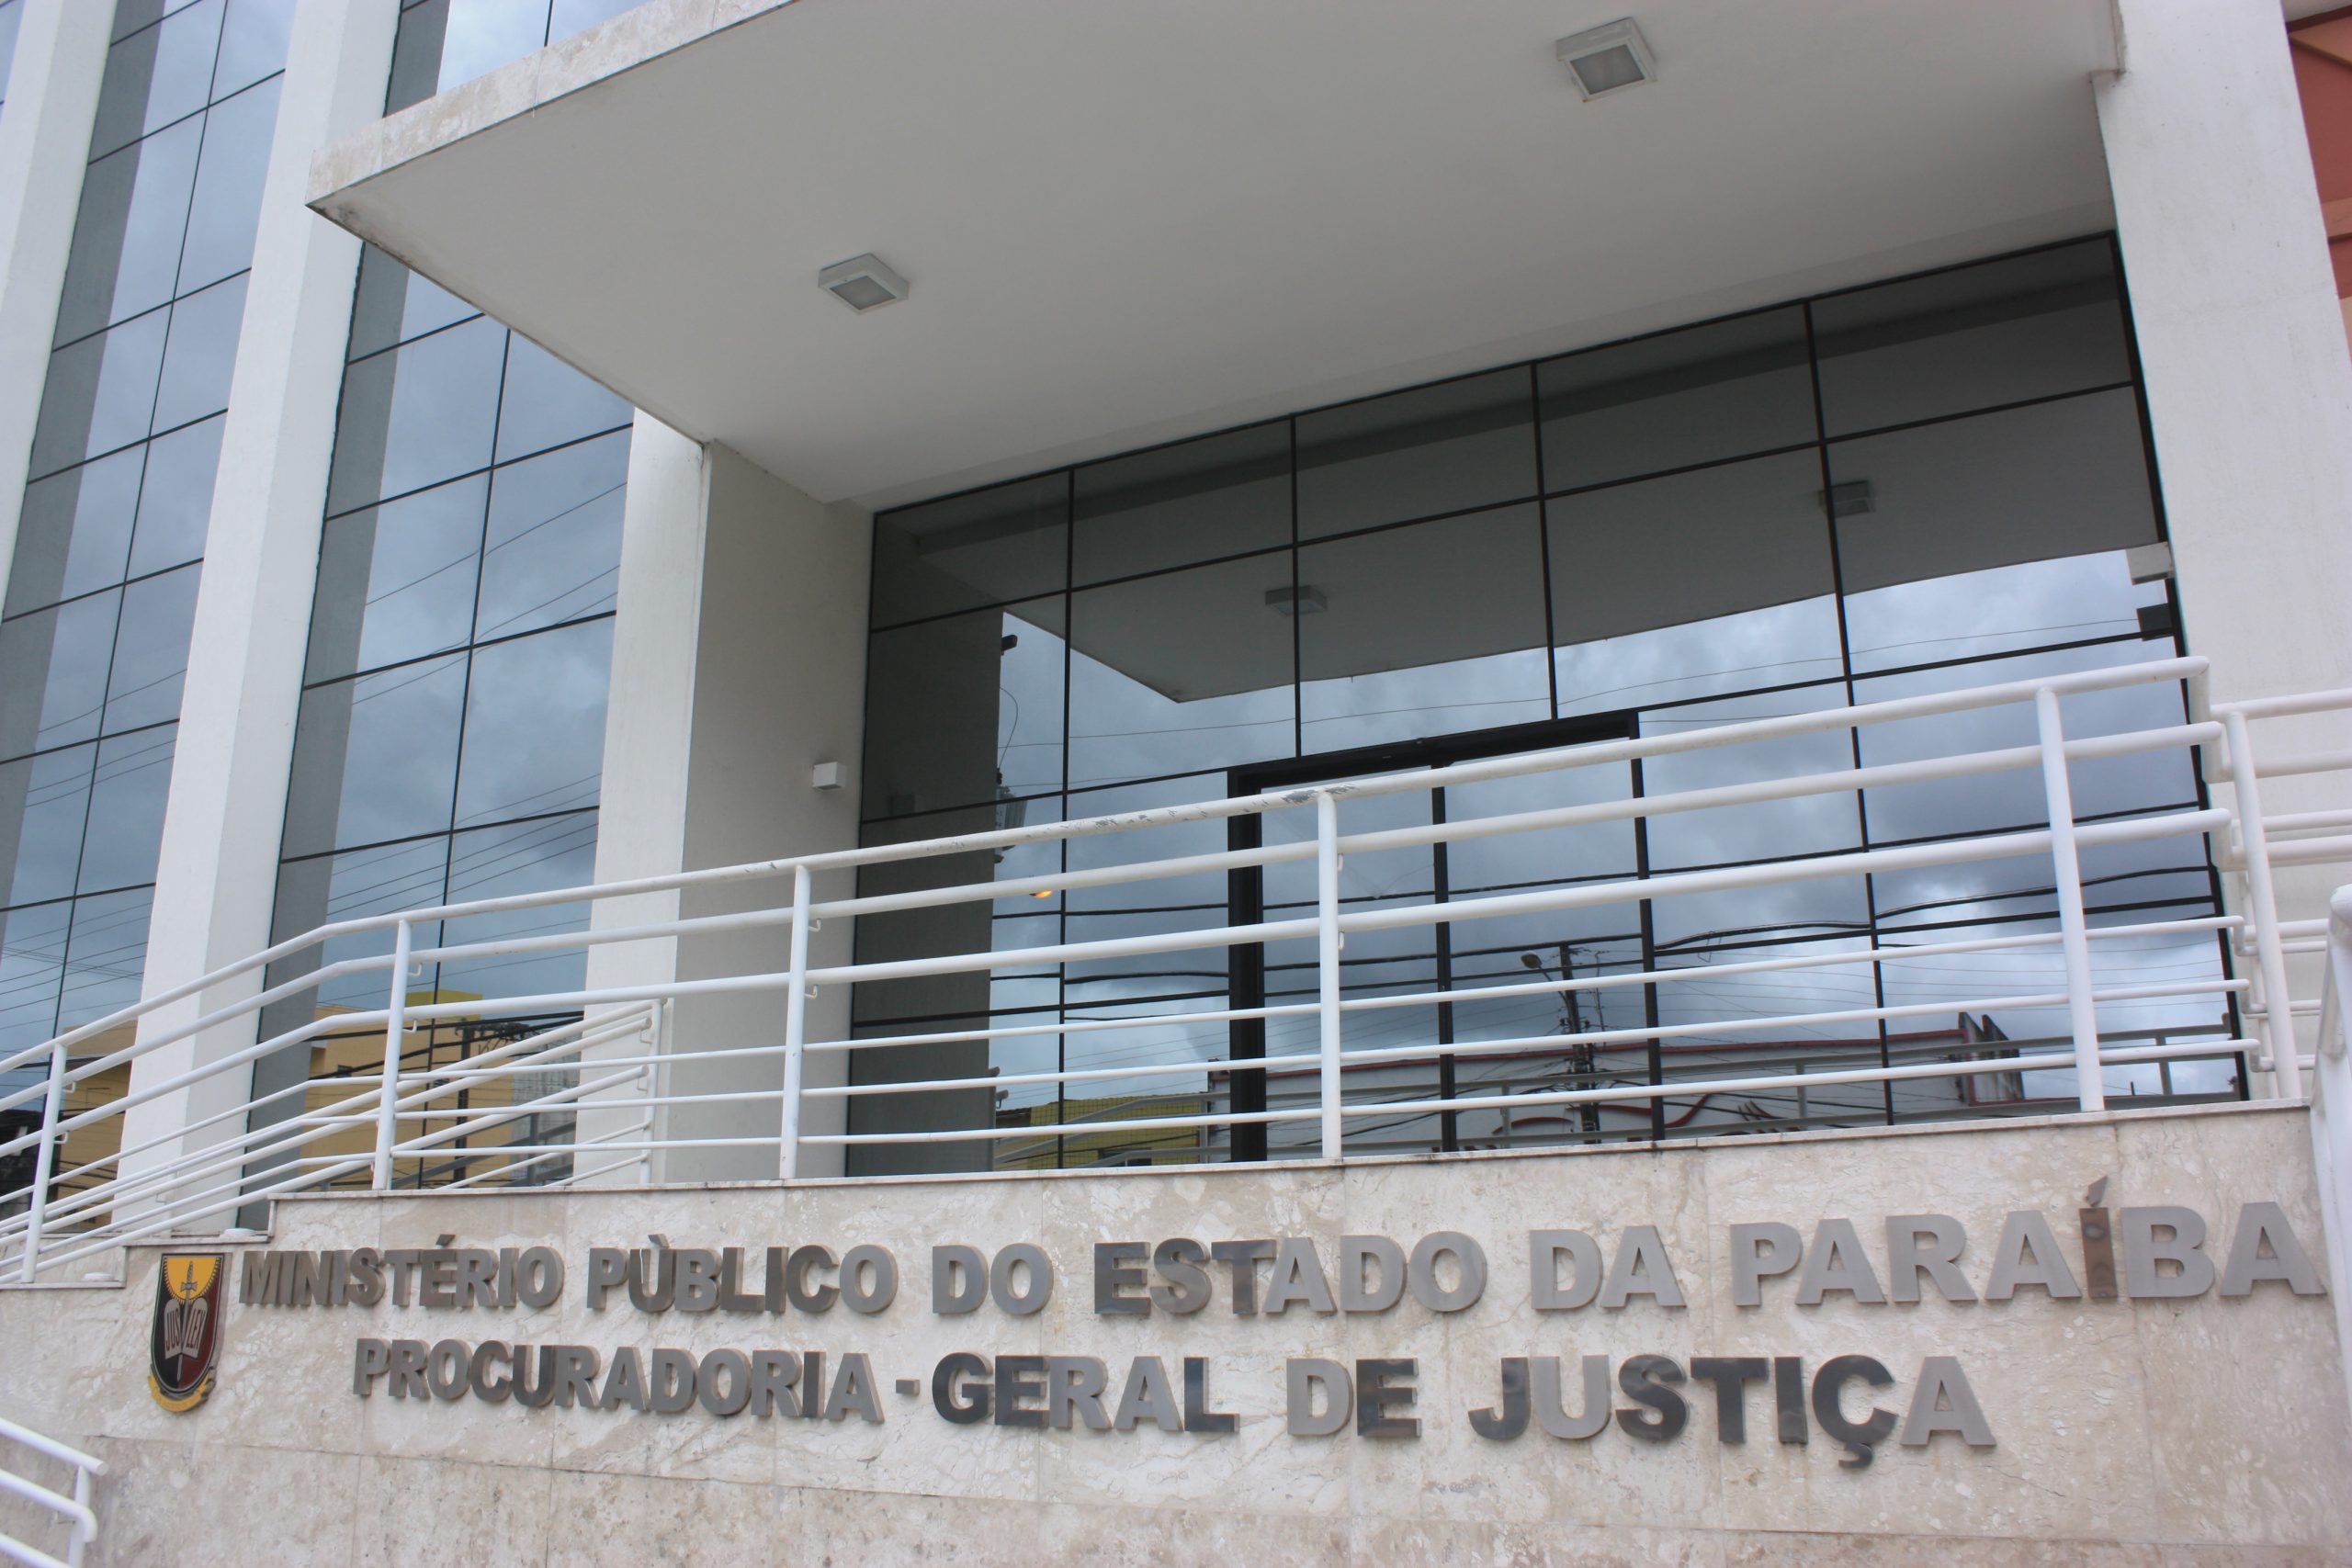 Ministerio-Publico-pb-scaled MP rastreia vínculos de prefeitos da Paraíba com outros cargos públicos. Veja lista